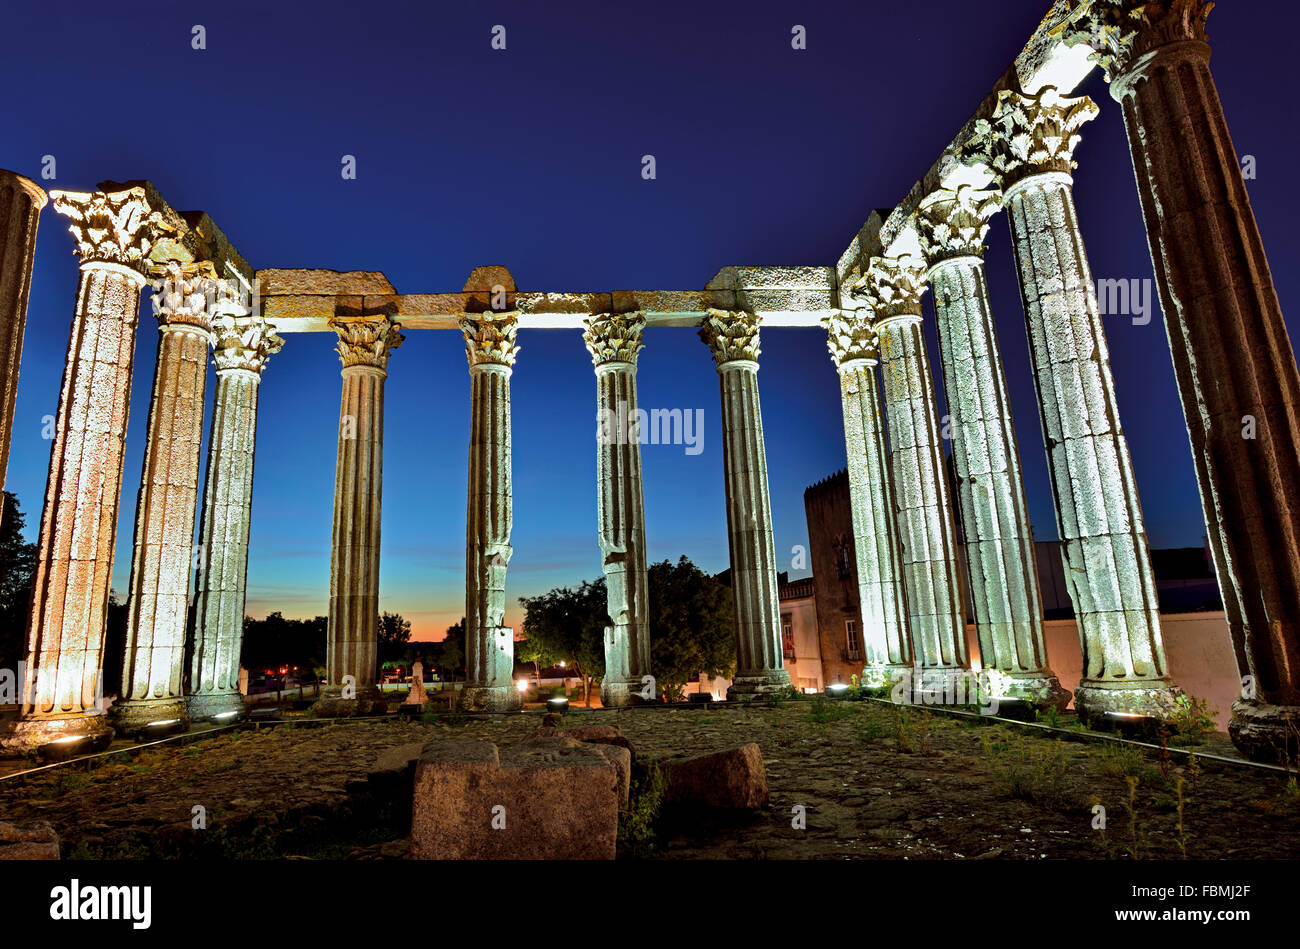 Le Portugal, l'Alentejo : lumineux nocturne dans le temple romain d'Évora Ville du patrimoine mondial Banque D'Images